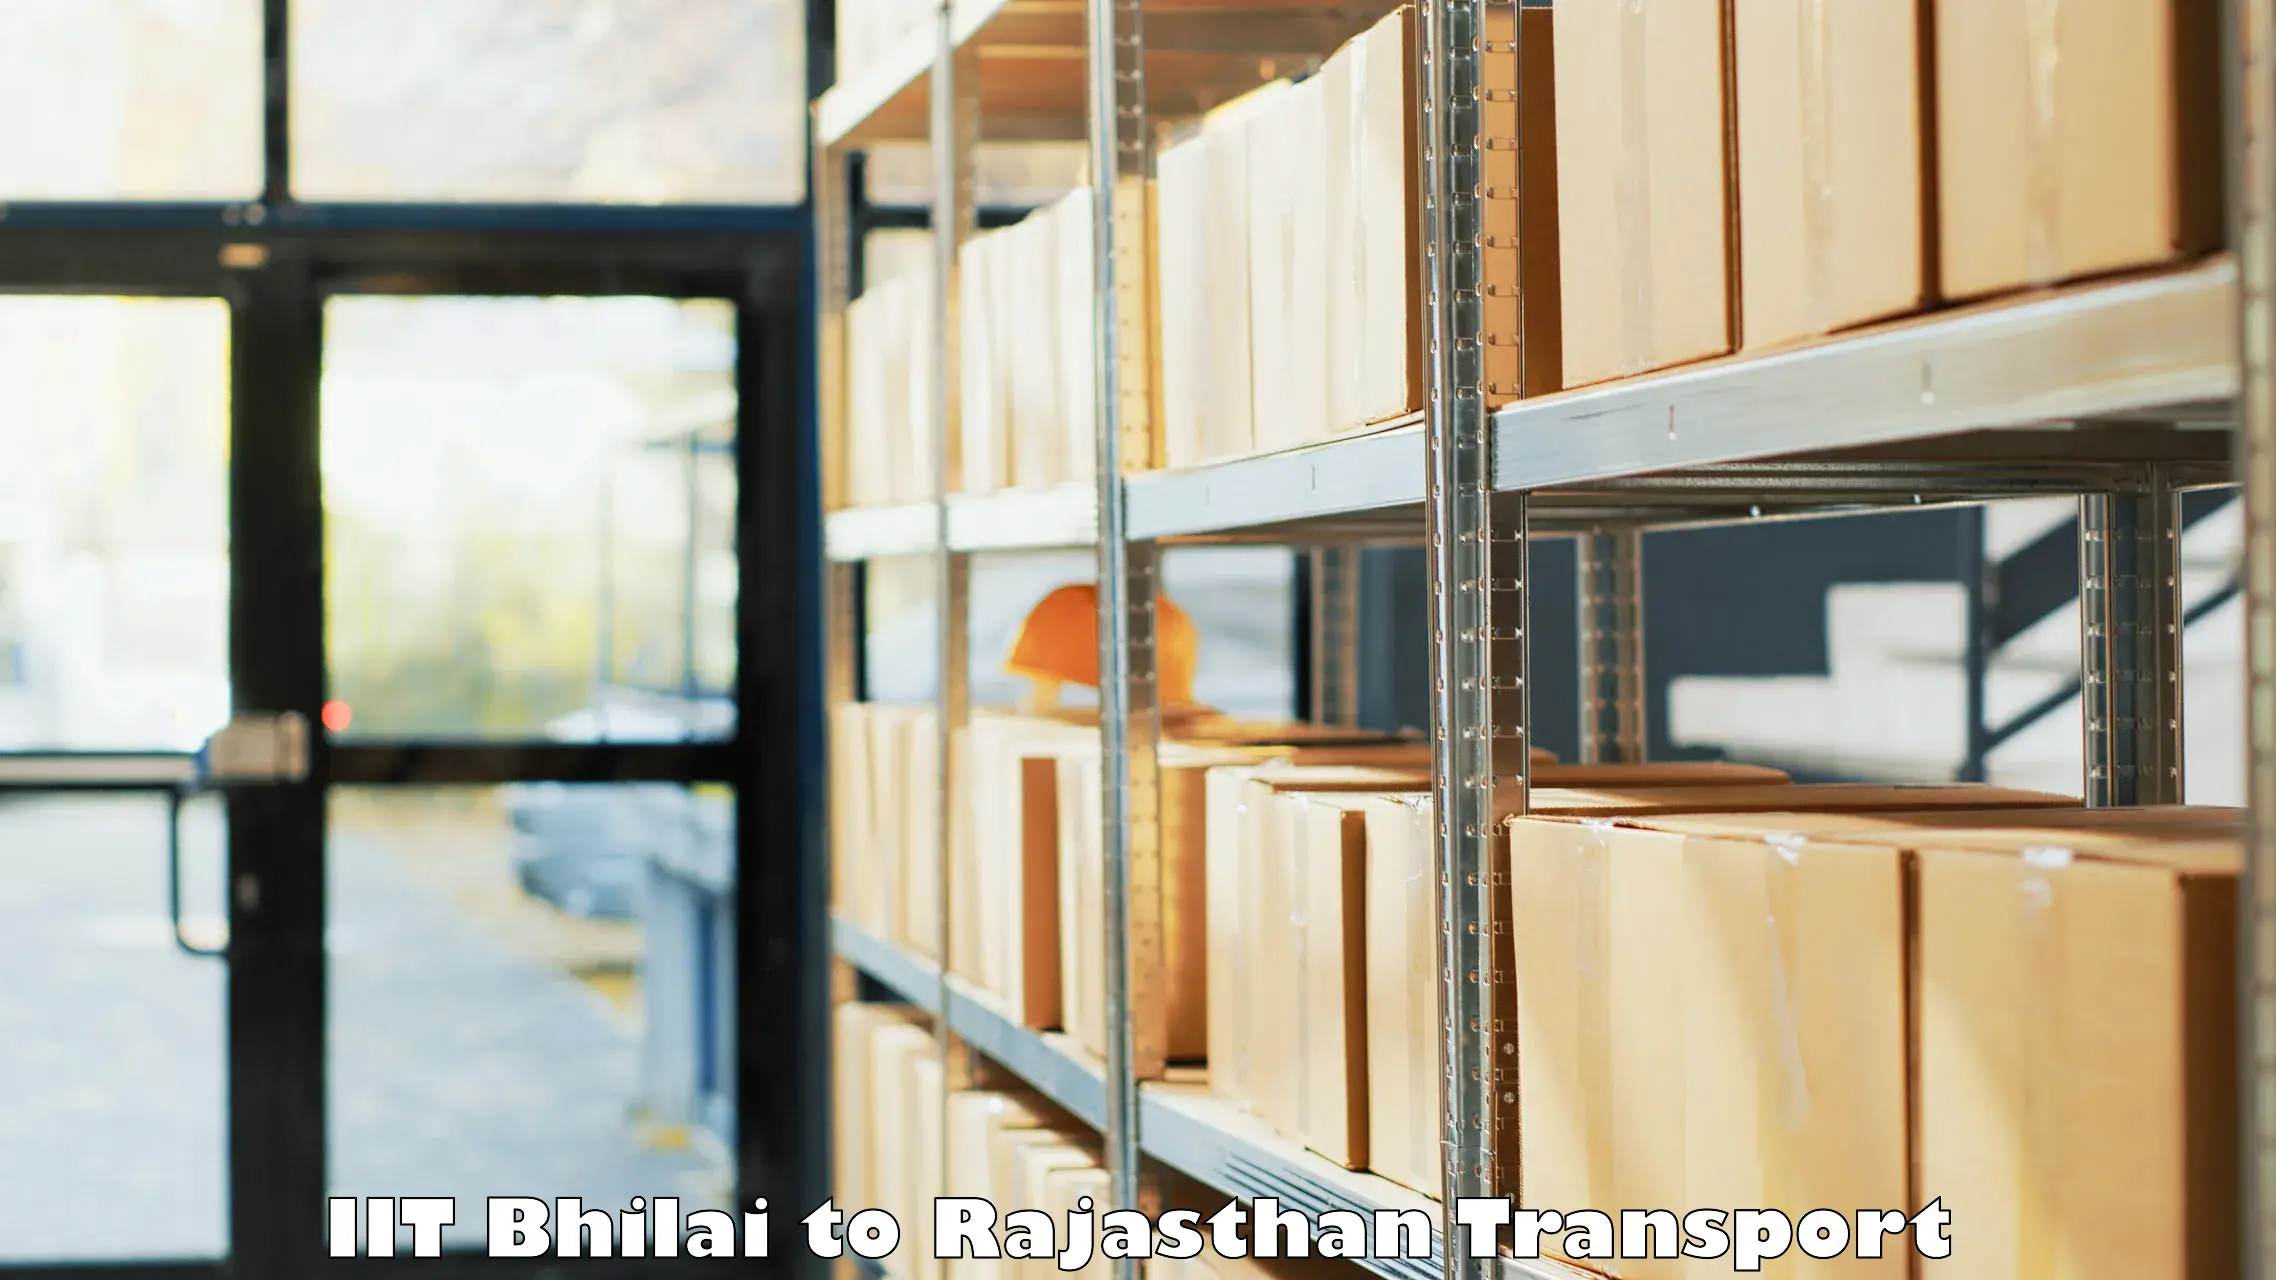 Shipping partner IIT Bhilai to Kekri